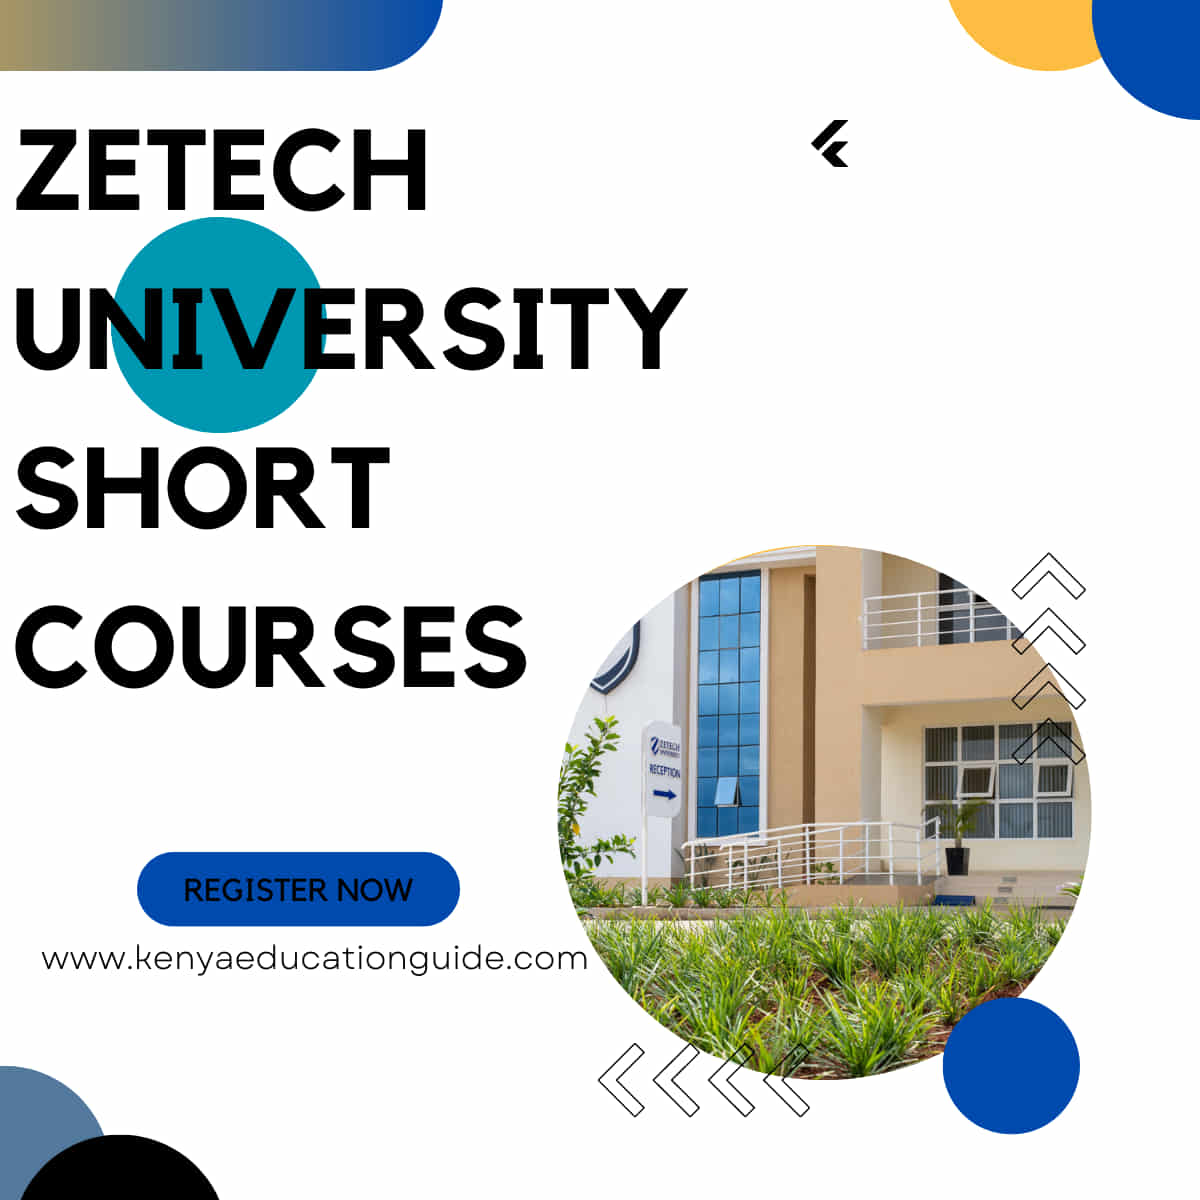 Zetech University short courses